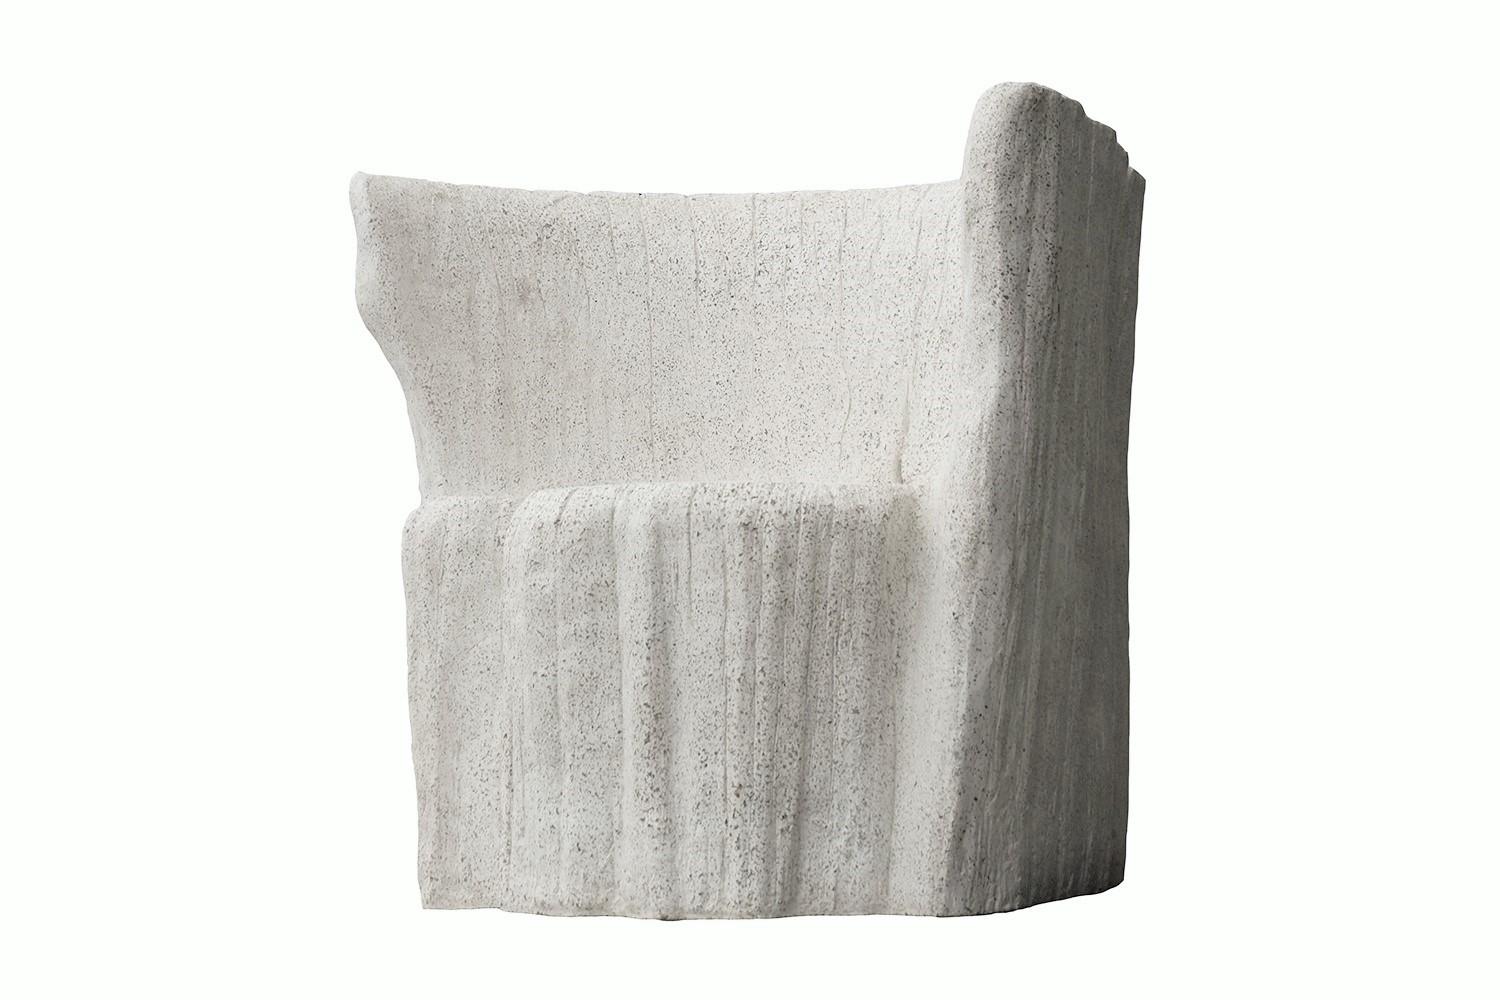 Le moule de cette chaise en acacia a été créé à partir d'une souche d'arbre. Illustré dans notre finition pierre naturelle, la texture et l'aspect moderne du béton lui permettent de s'adapter à une grande variété de styles et d'espaces.

Dimensions